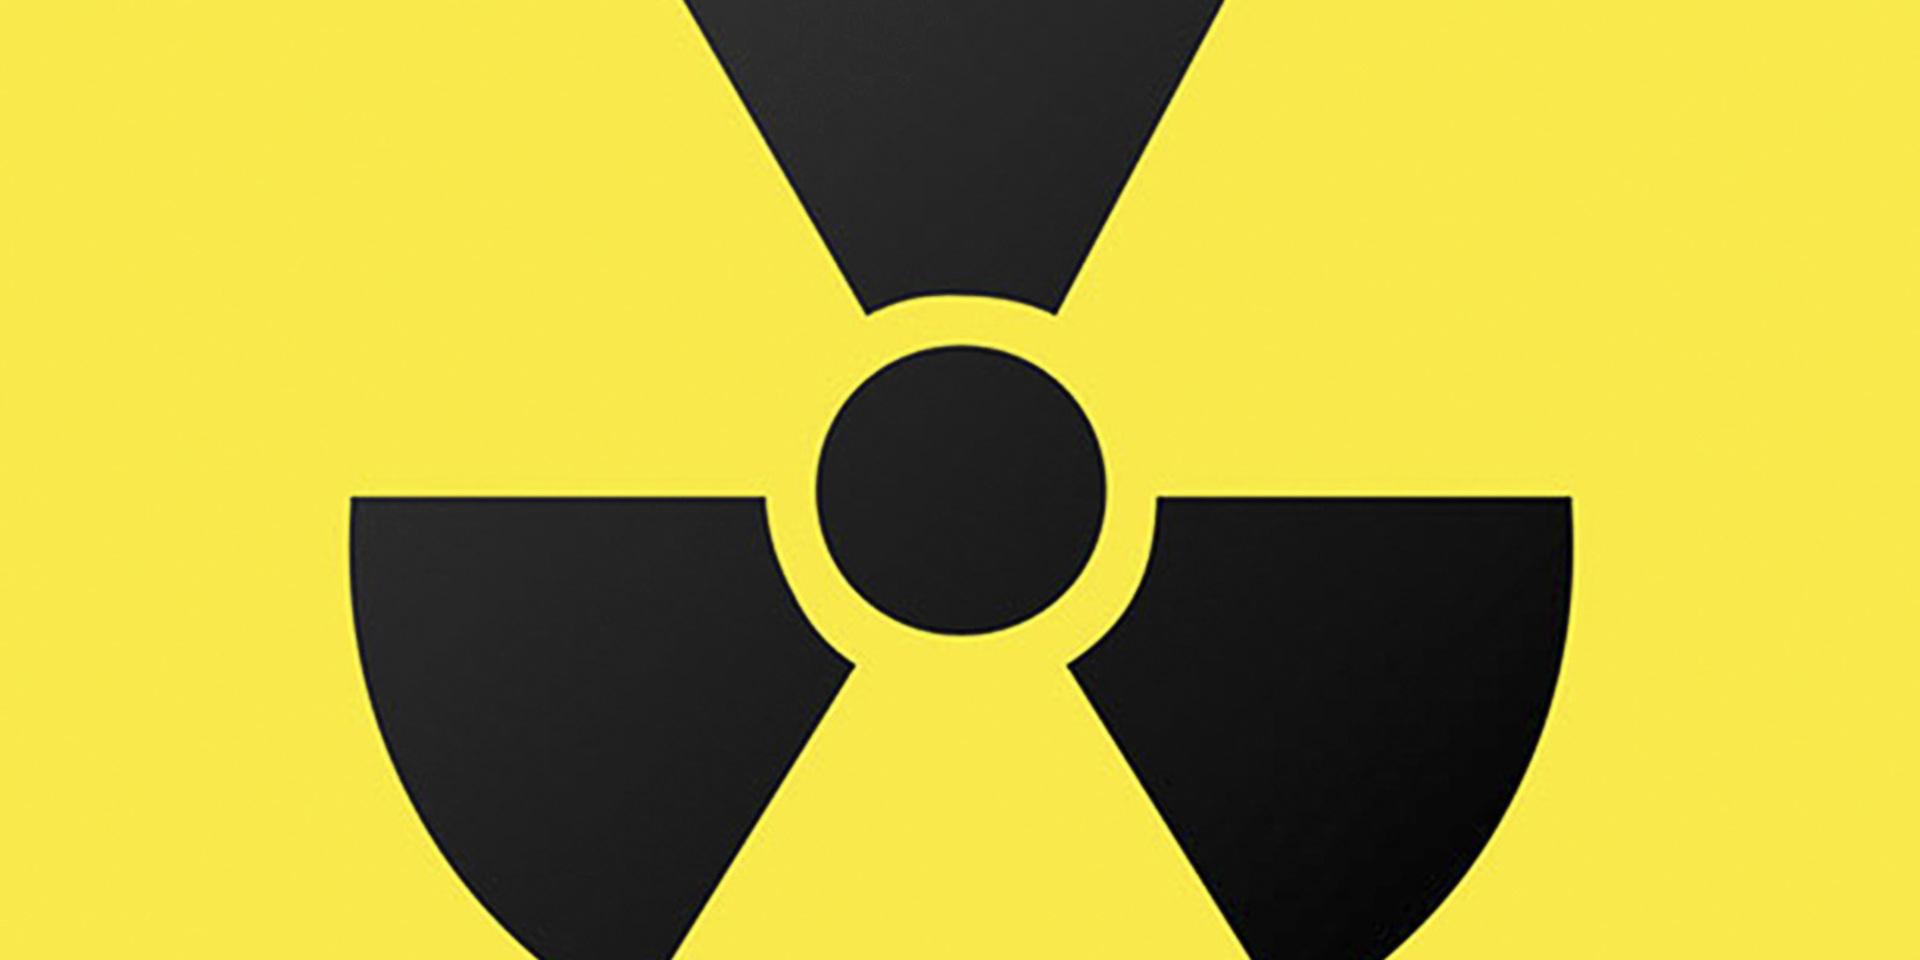 Varför är man så rädd för den mycket lilla del av strålningen, lång under 1 %, som har med kärnkraft att göra, undrar insändarskribenten.